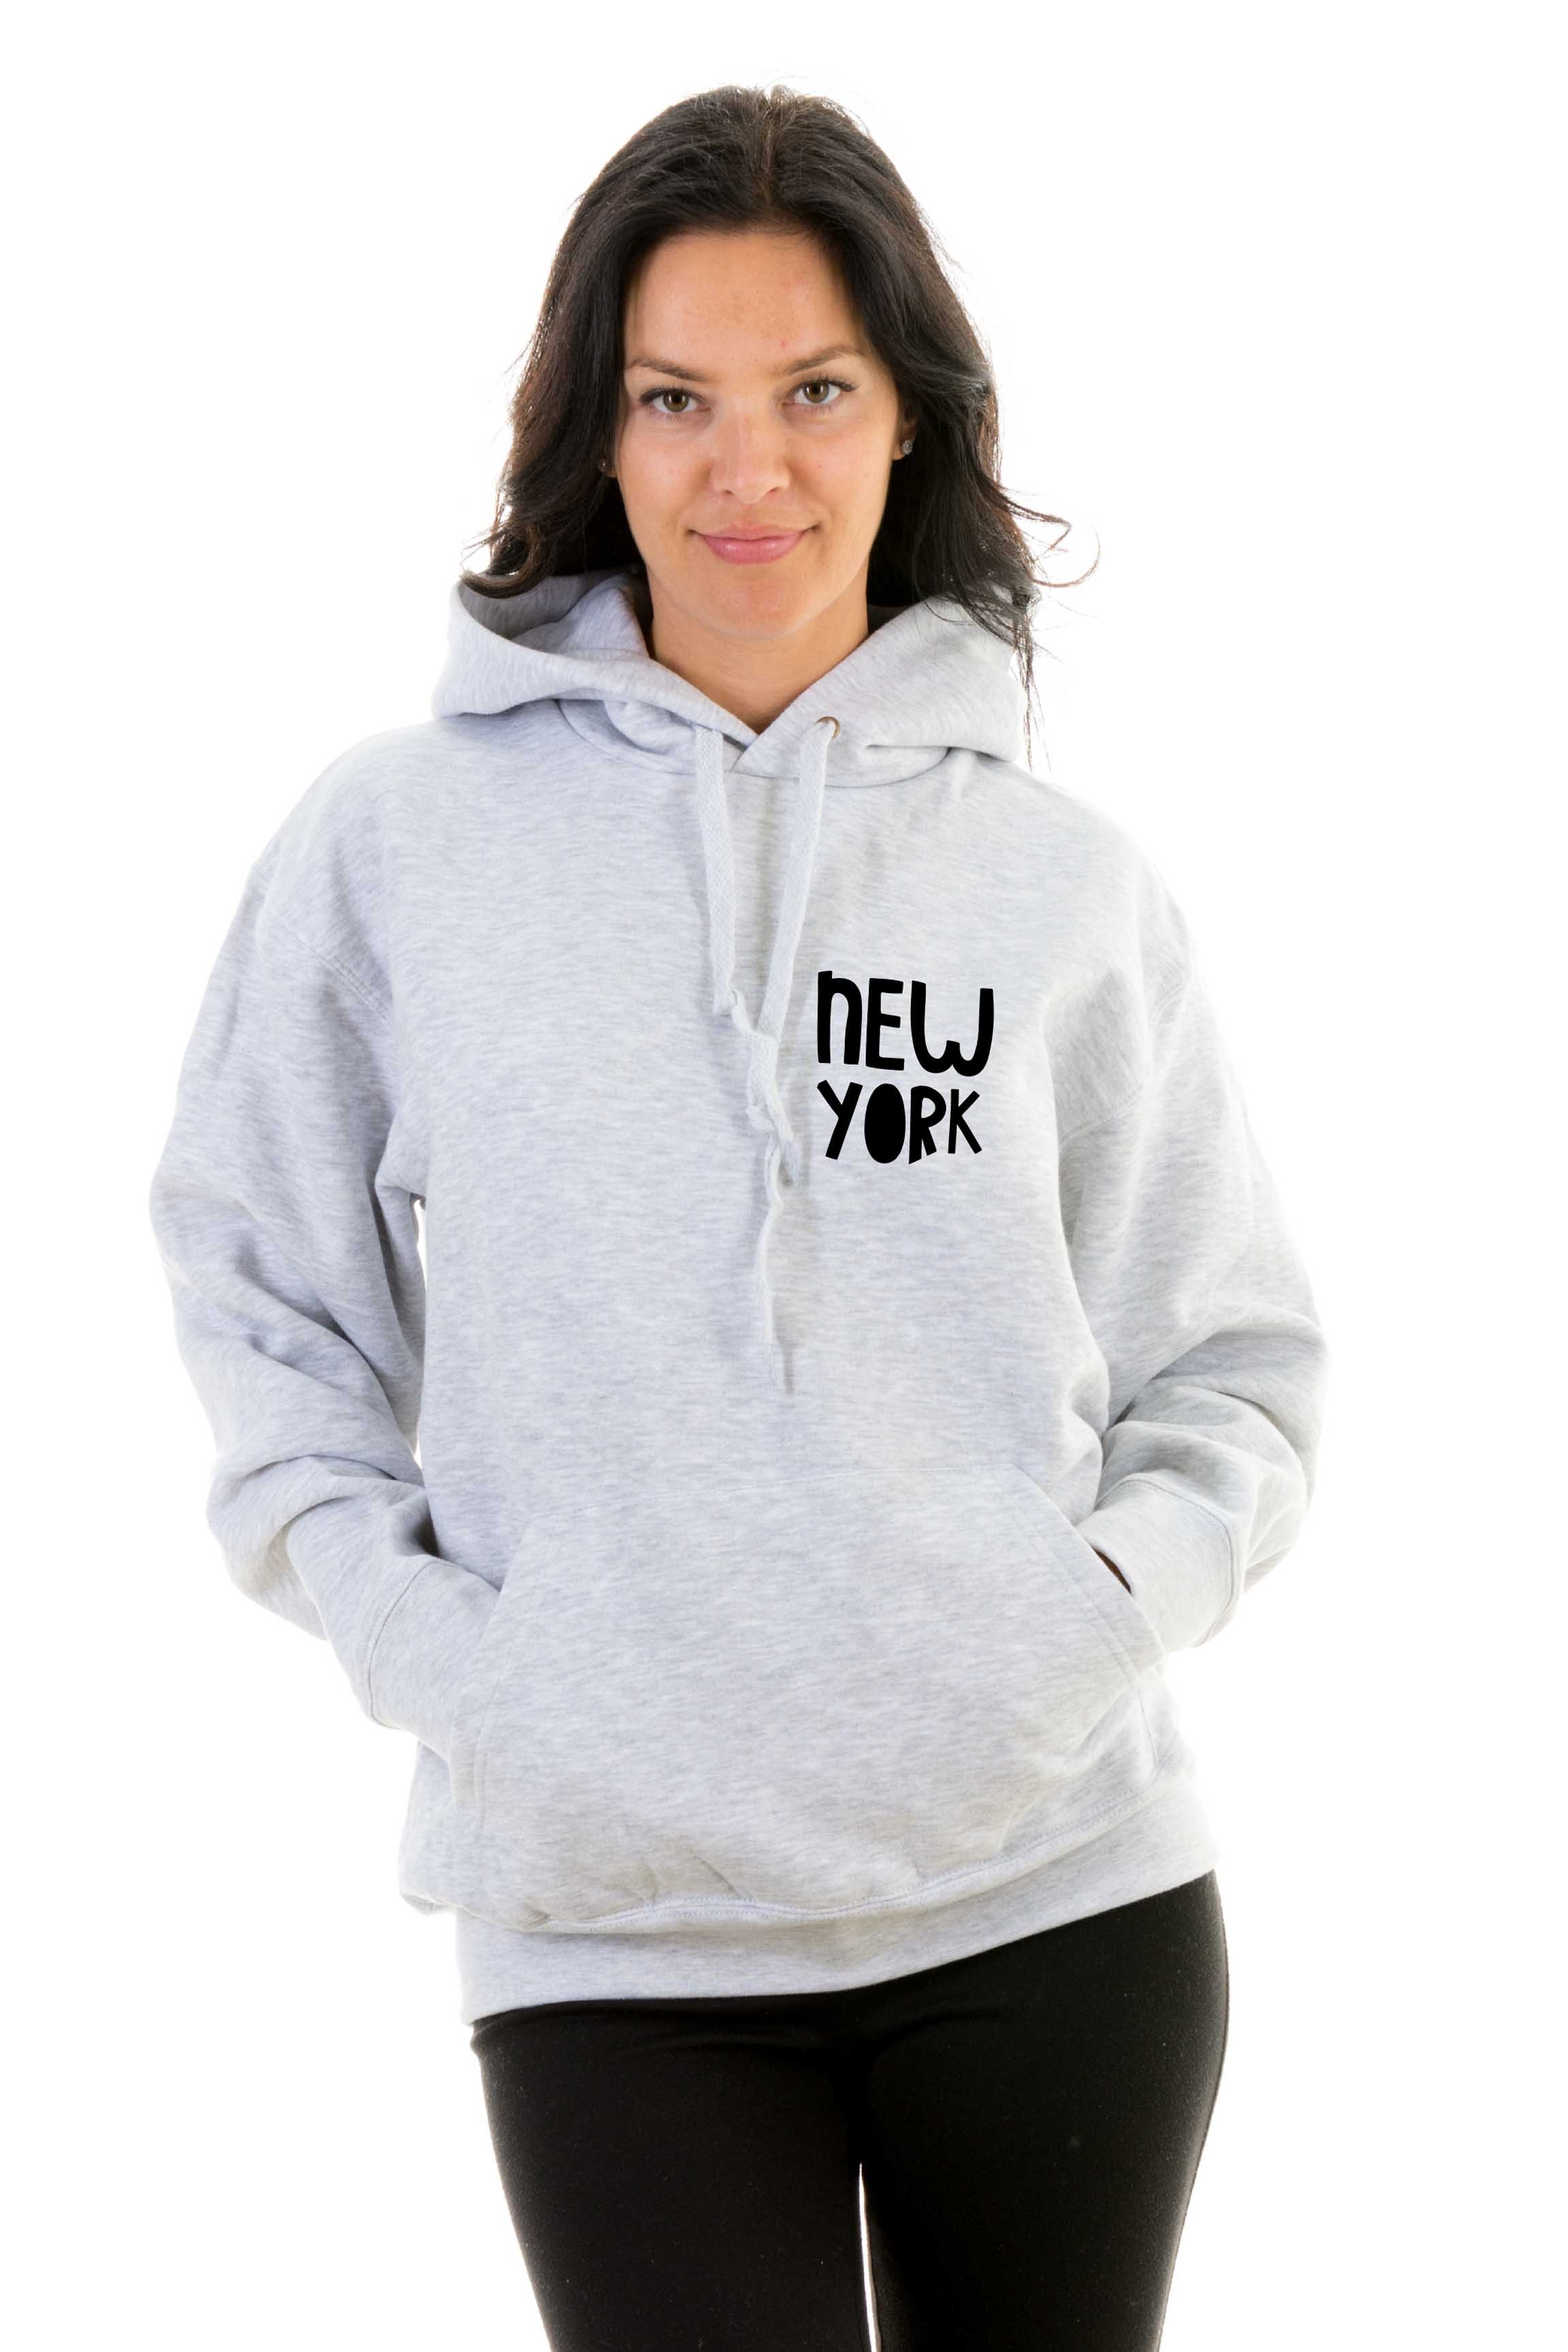 Hoodie New York - Hoodies u0026 sweatshirts - Apparel - Shop